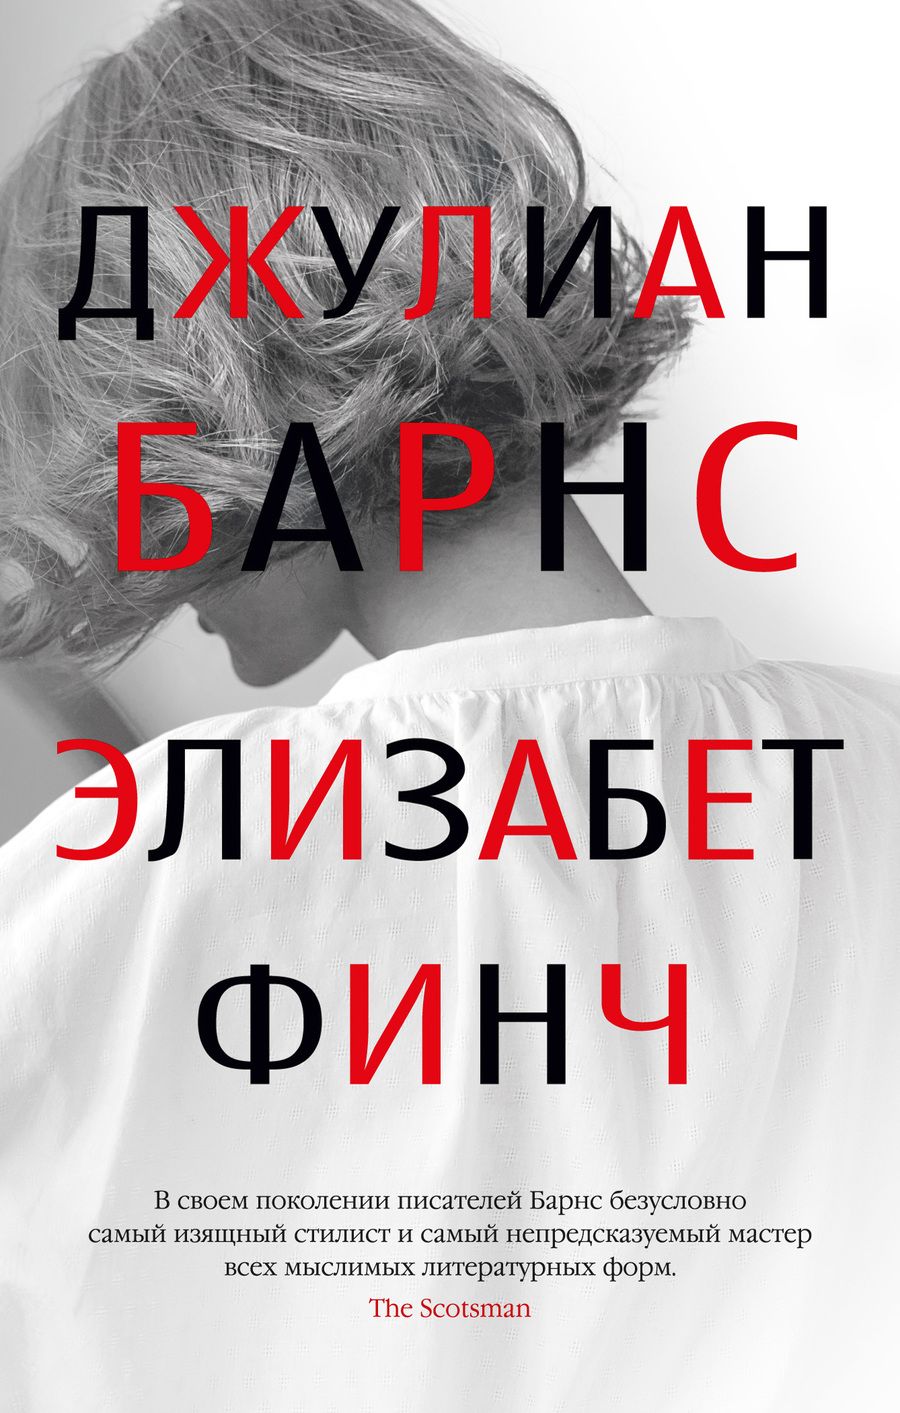 Обложка книги "Барнс: Элизабет Финч"